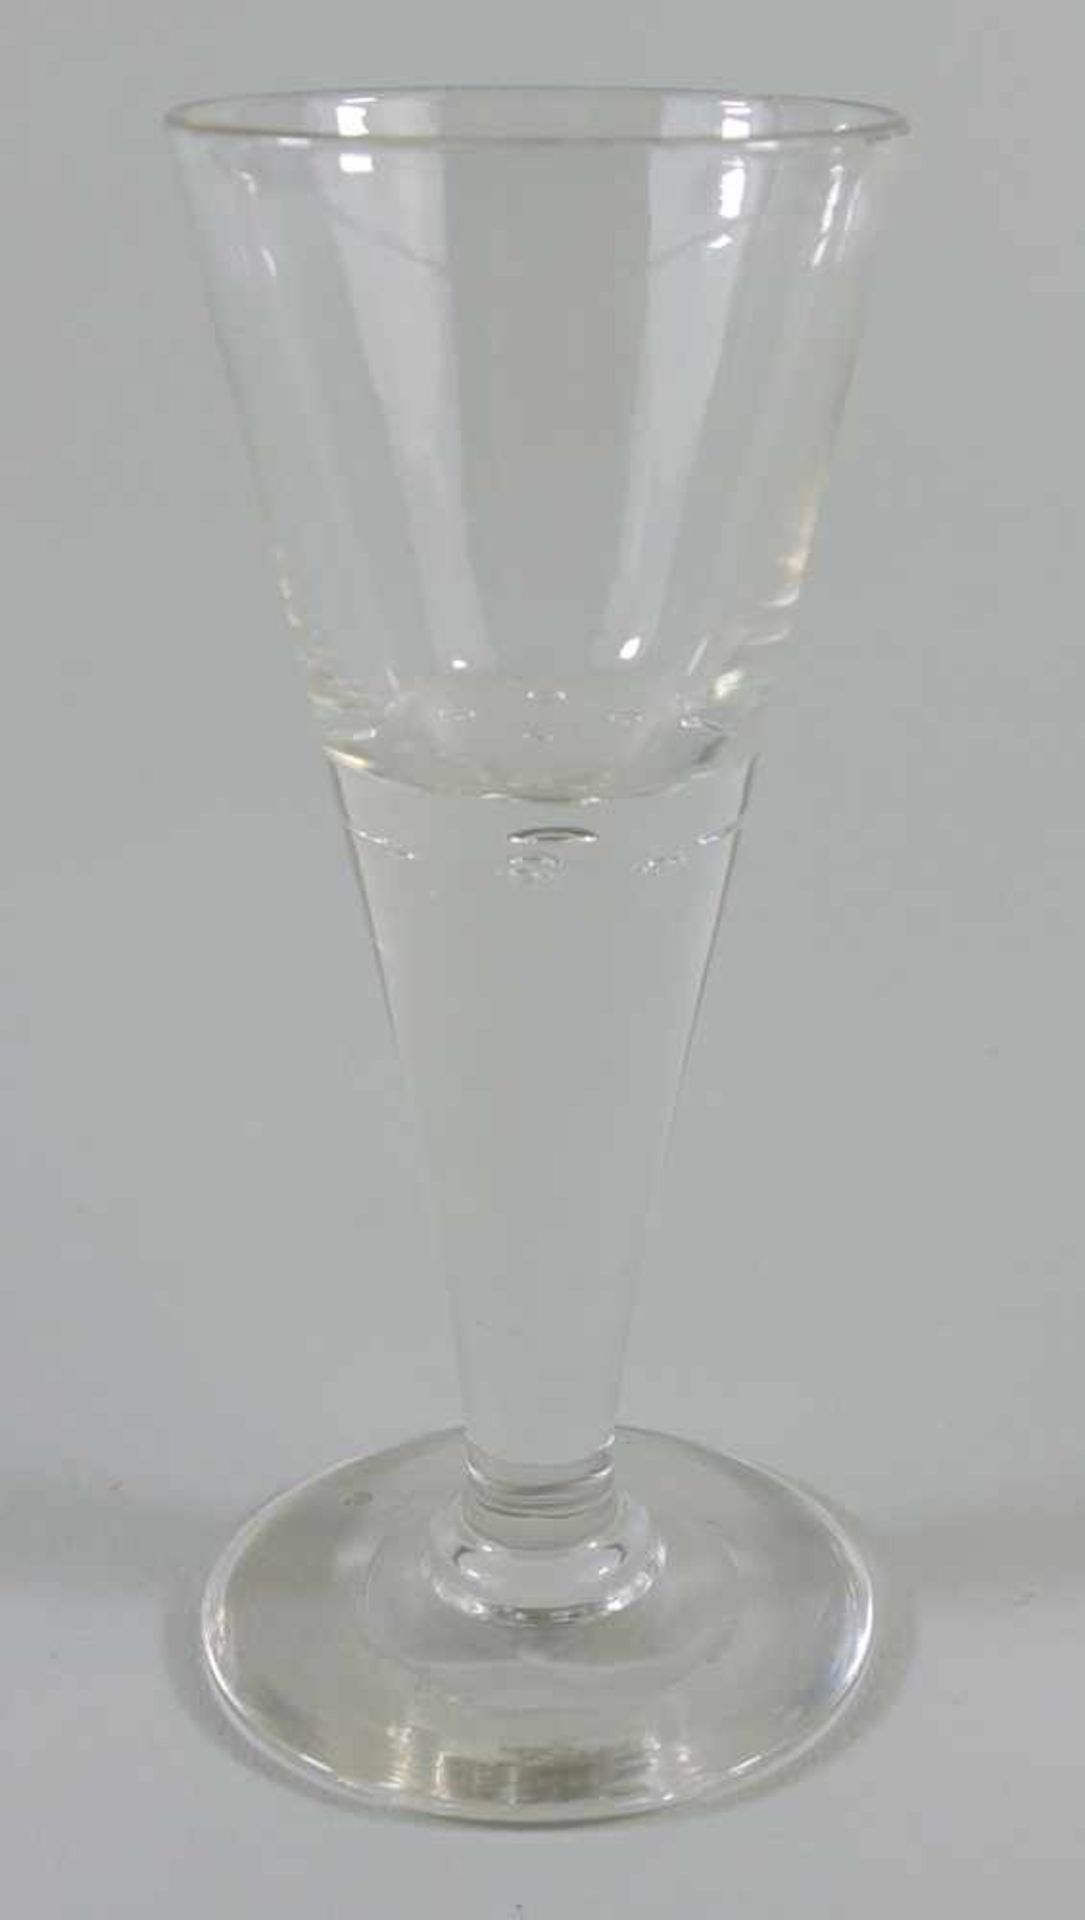 Kelchglas mit eingestochenen Luftblasen, 19.Jh., H.14cm, farbloses Glas, Schaft mit 7 eingestochenen